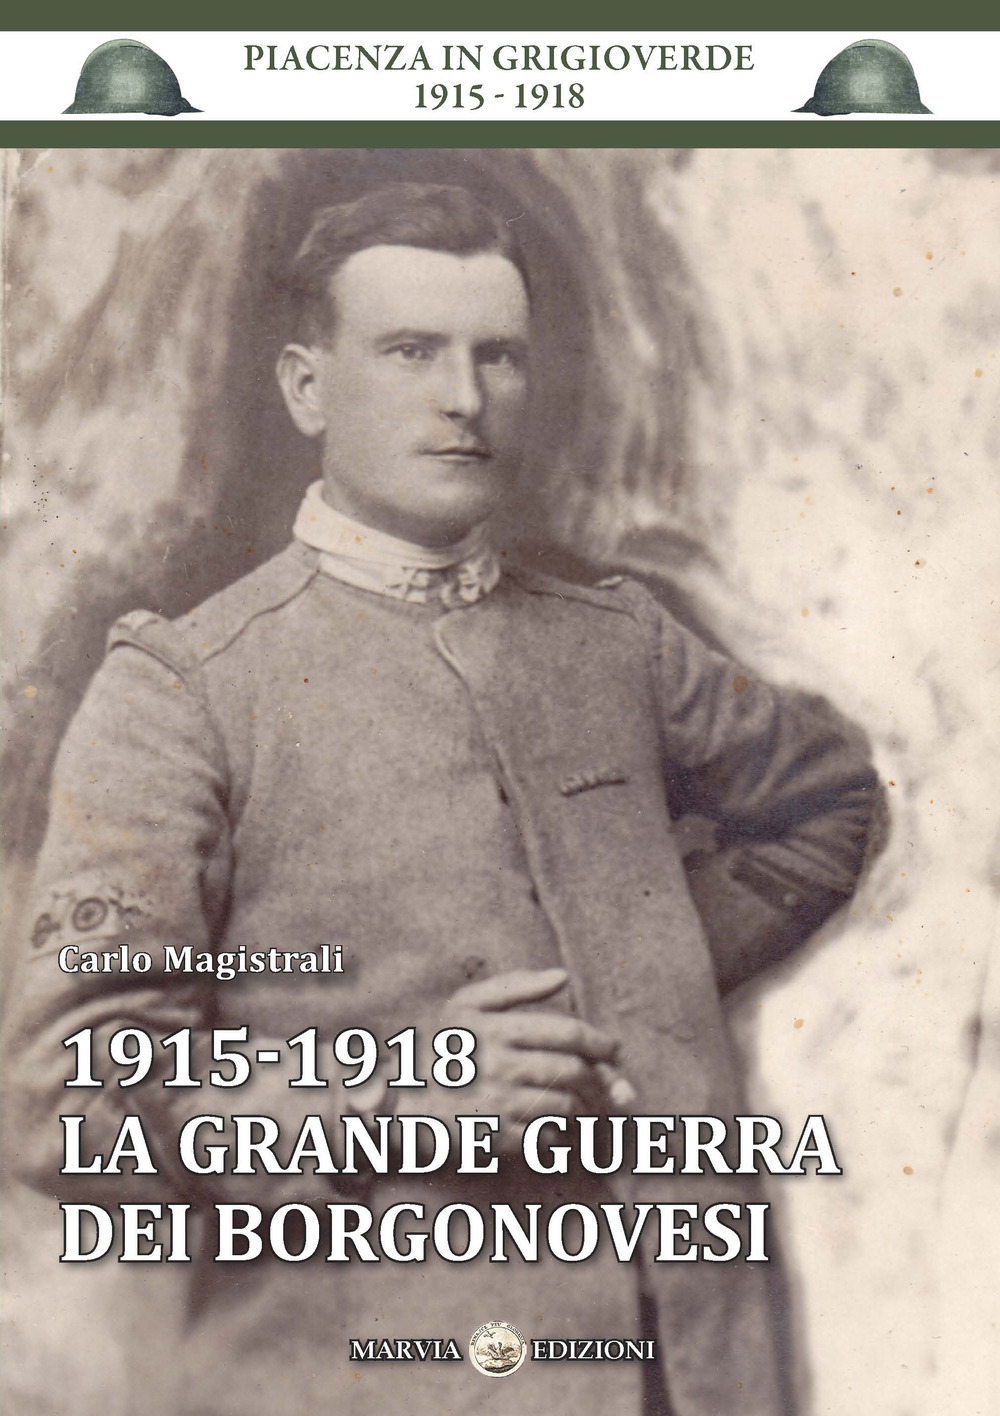 1915-1918 la grande guerra dei borgonovesi